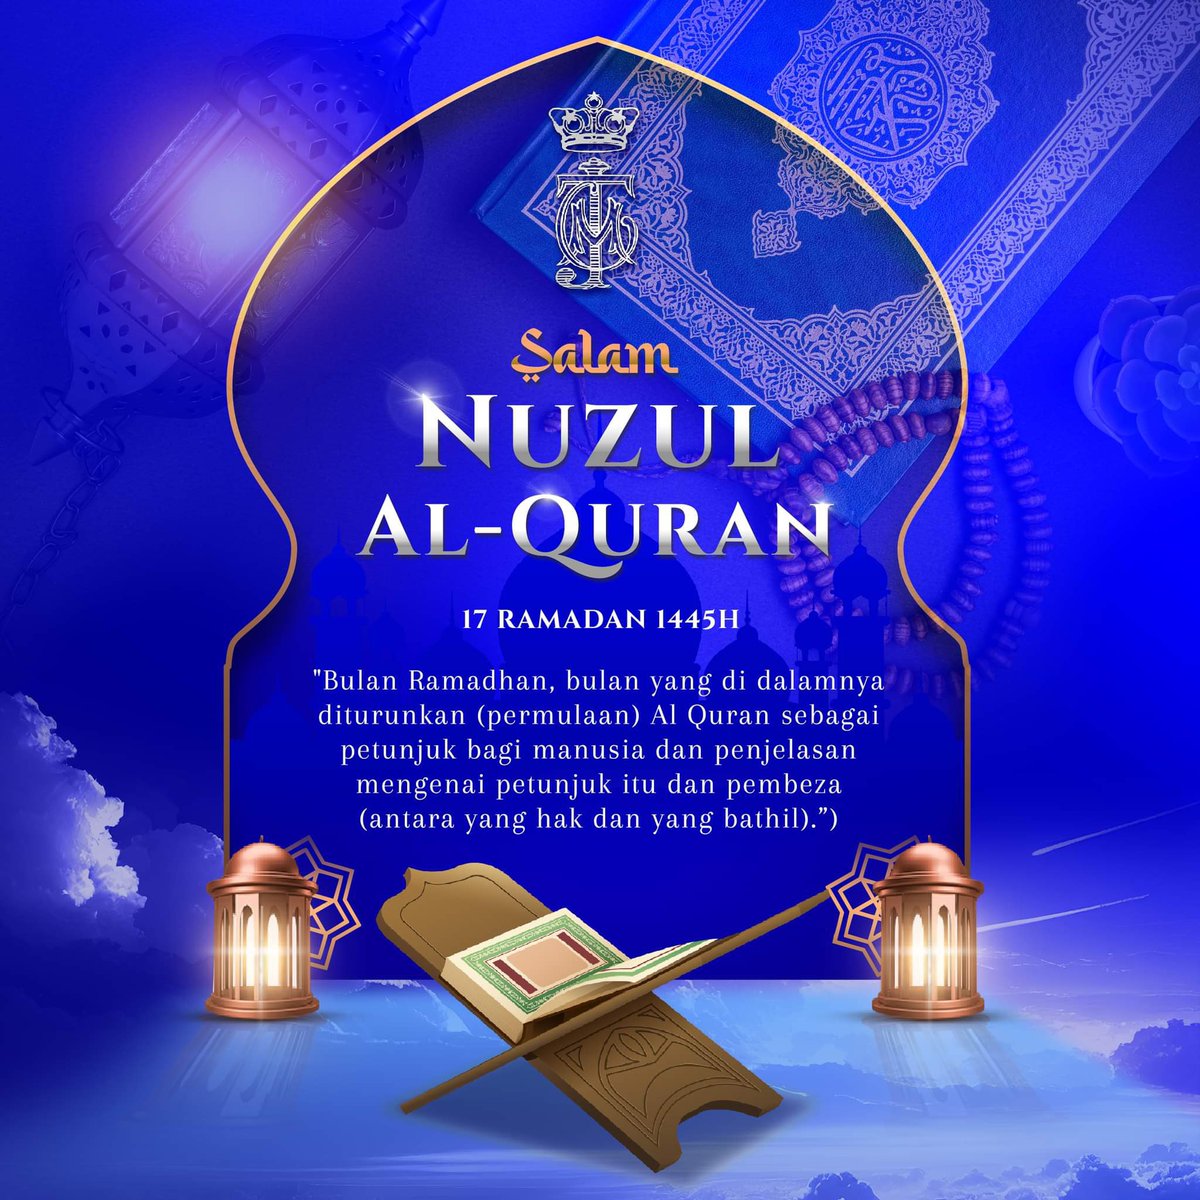 Marilah kita sama-sama menghayati dan mengamalkan Al-Quran sebagai rujukan dan panduan dalam kehidupan kita. Semoga kita semua diberkati dan dirahmati Allah SWT agar beroleh kebahagiaan di dunia dan akhirat. Salam Nuzul Al-Quran 1445 Hijrah.